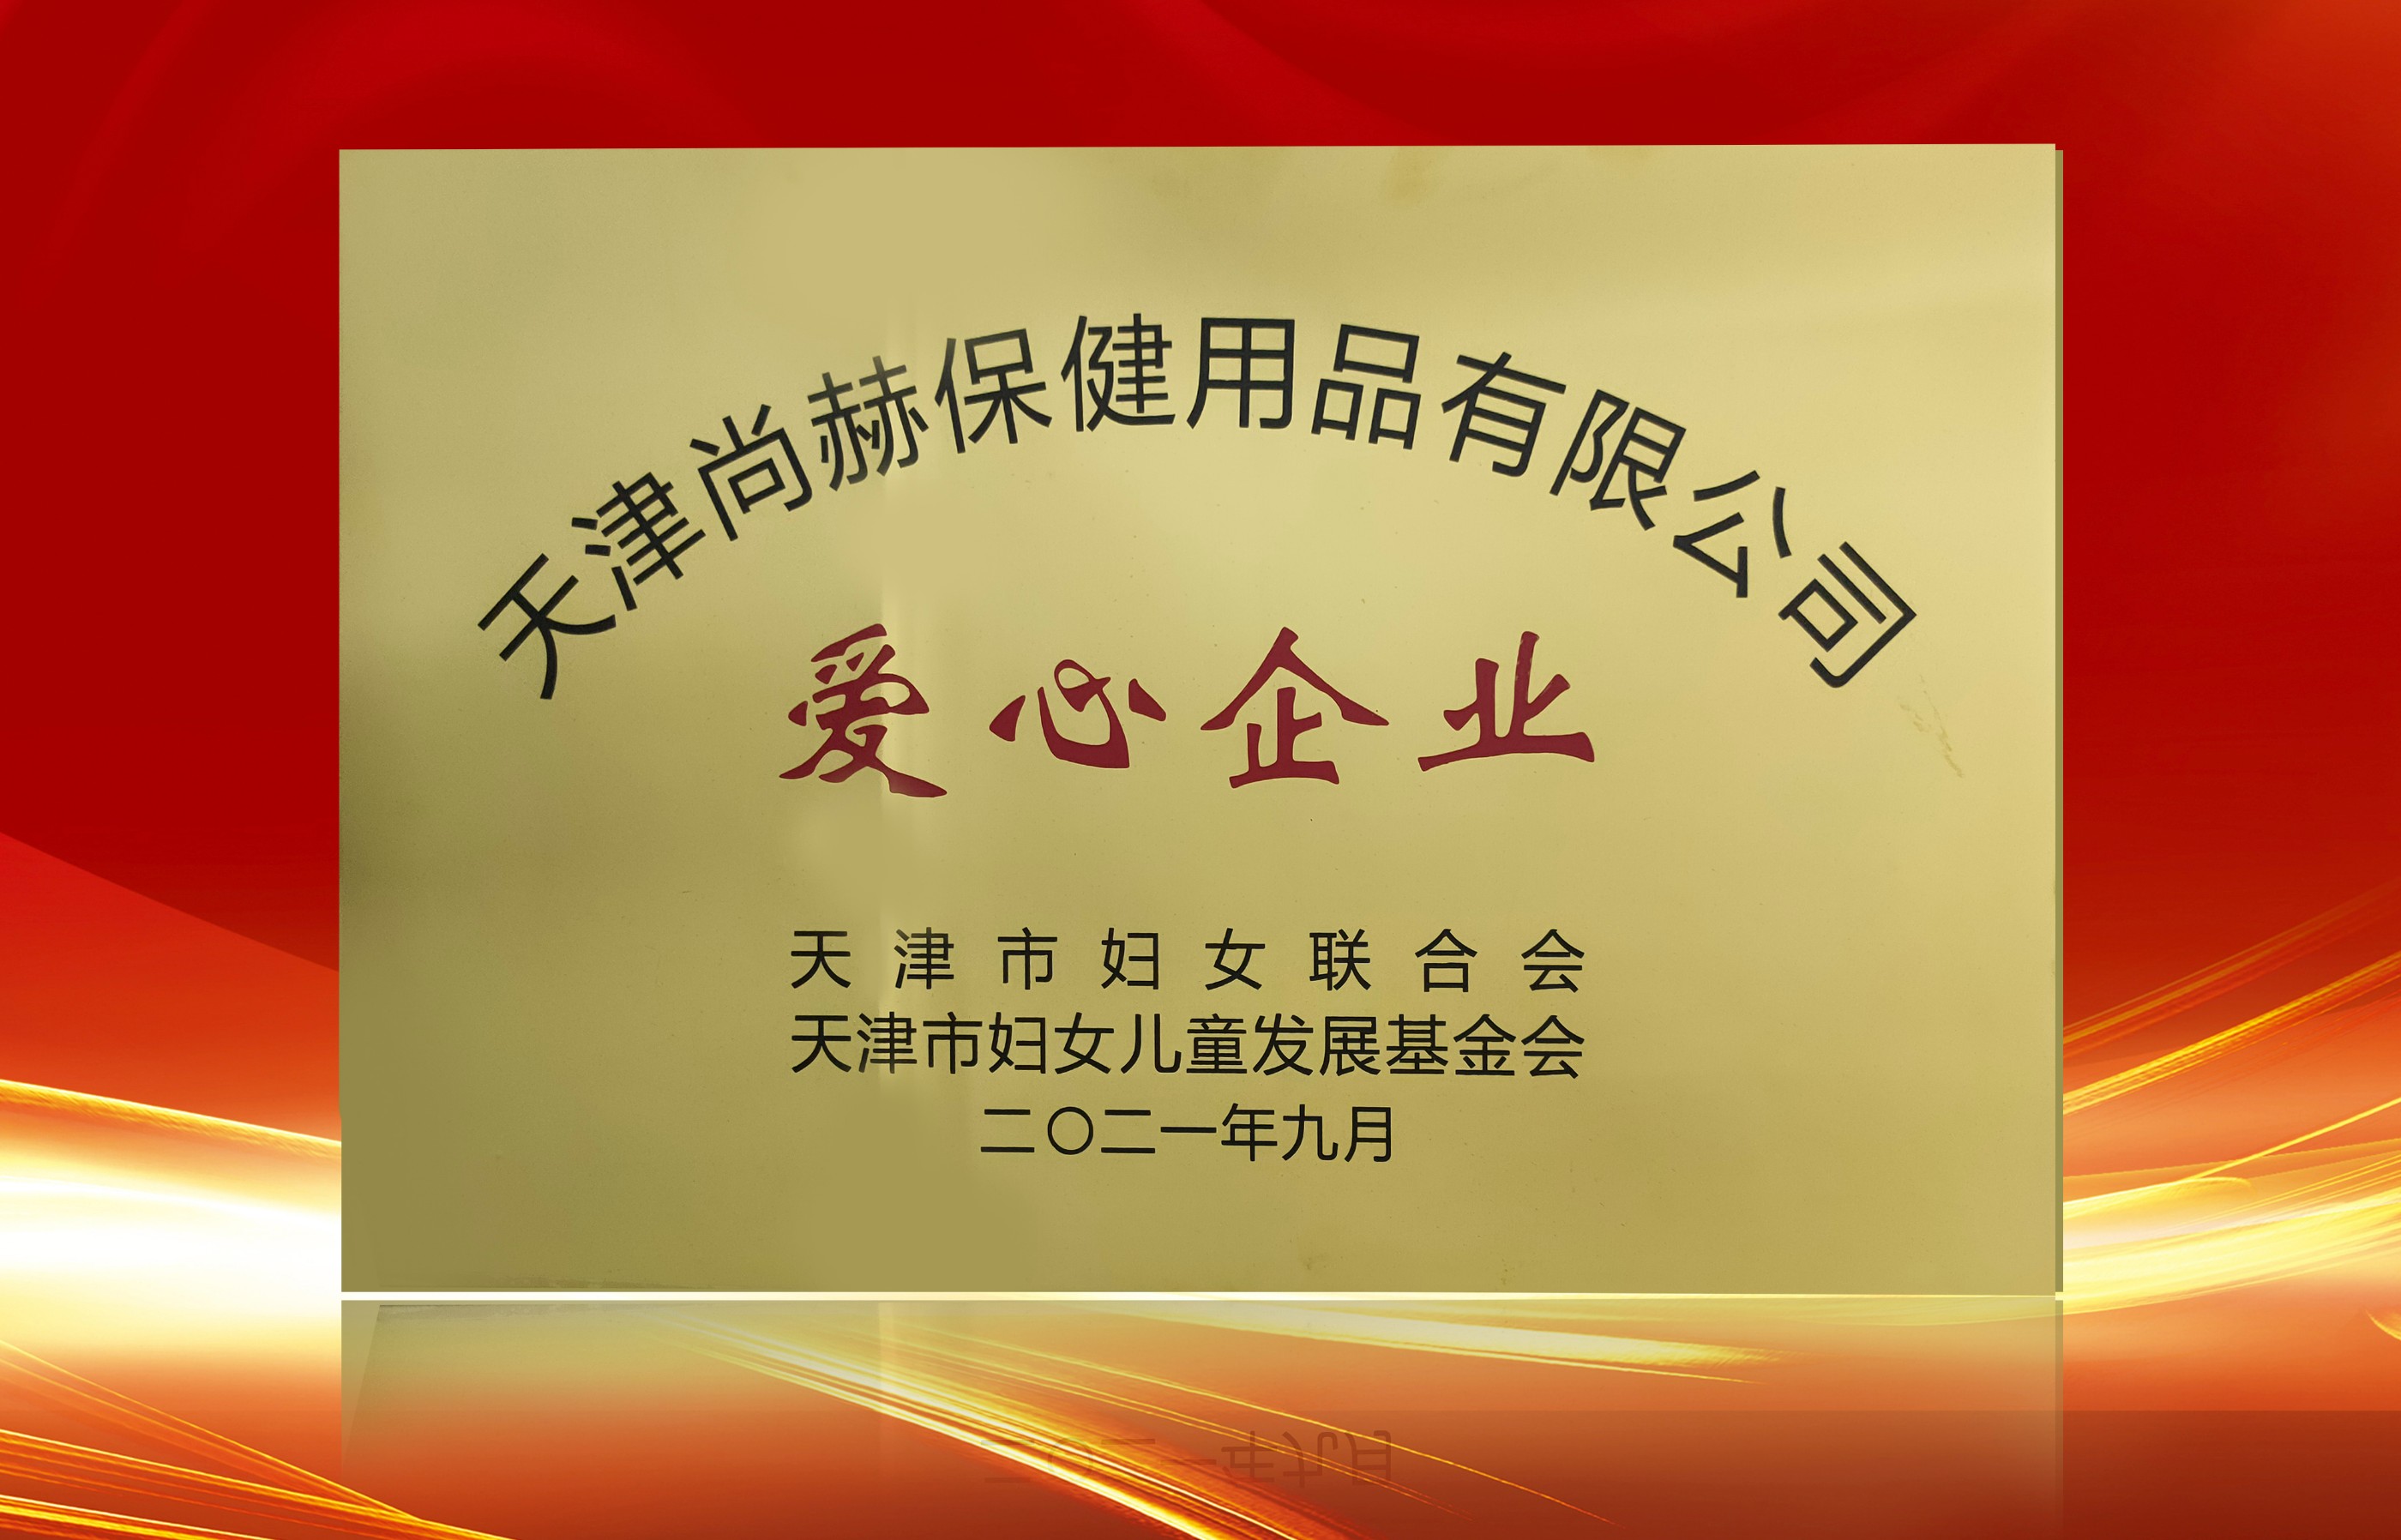 2021年9月-立博登录（中国）有限公司官网公司荣获-天津市妇女联合会-“爱心企业”称号